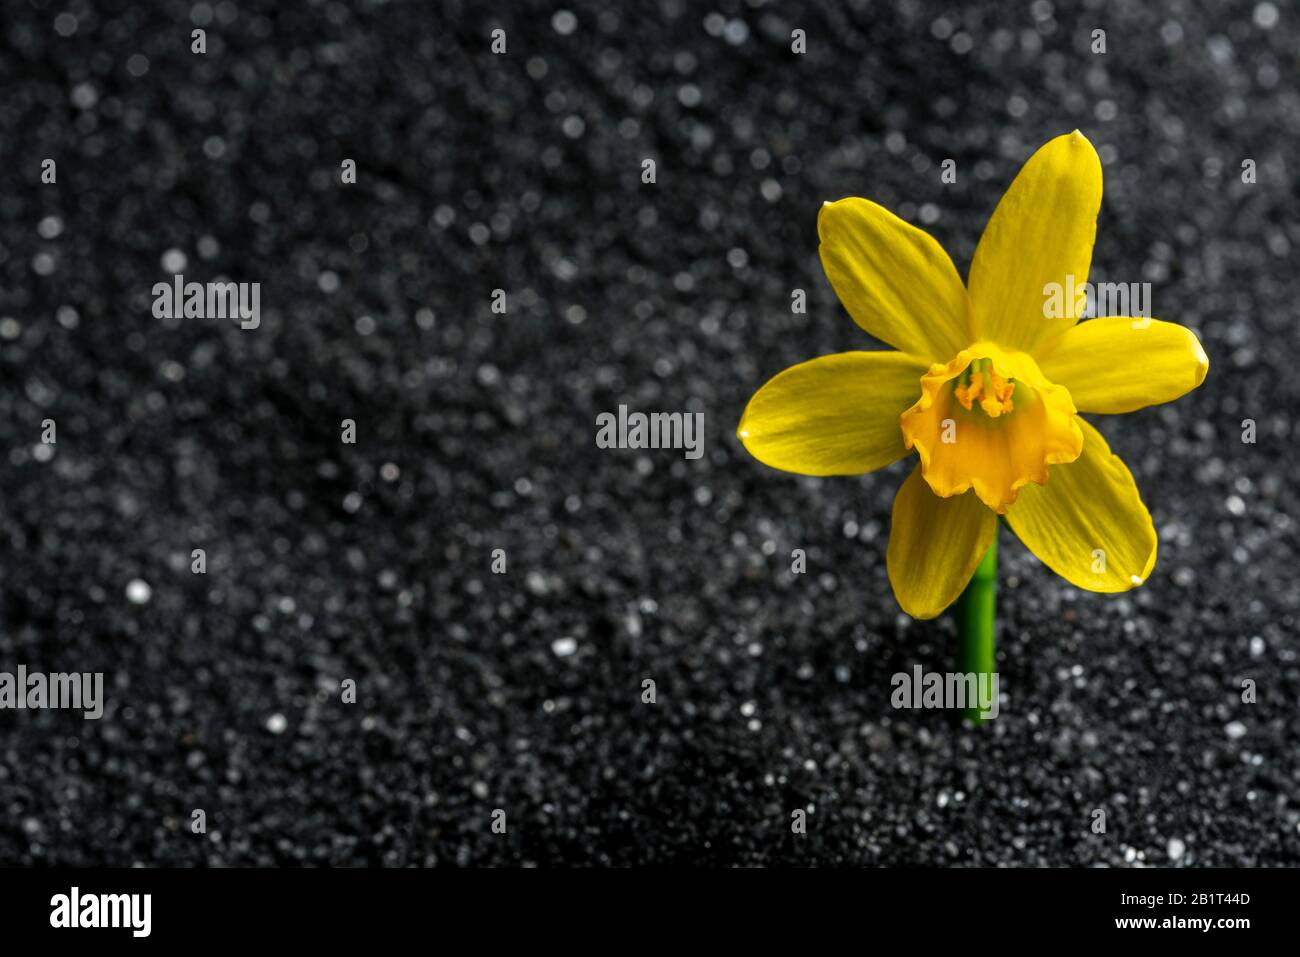 Daffodil, tete tete, crescendo in sabbia nera sfidando tutte le probabilità per sopravvivere in condizioni avverse. Foto Stock